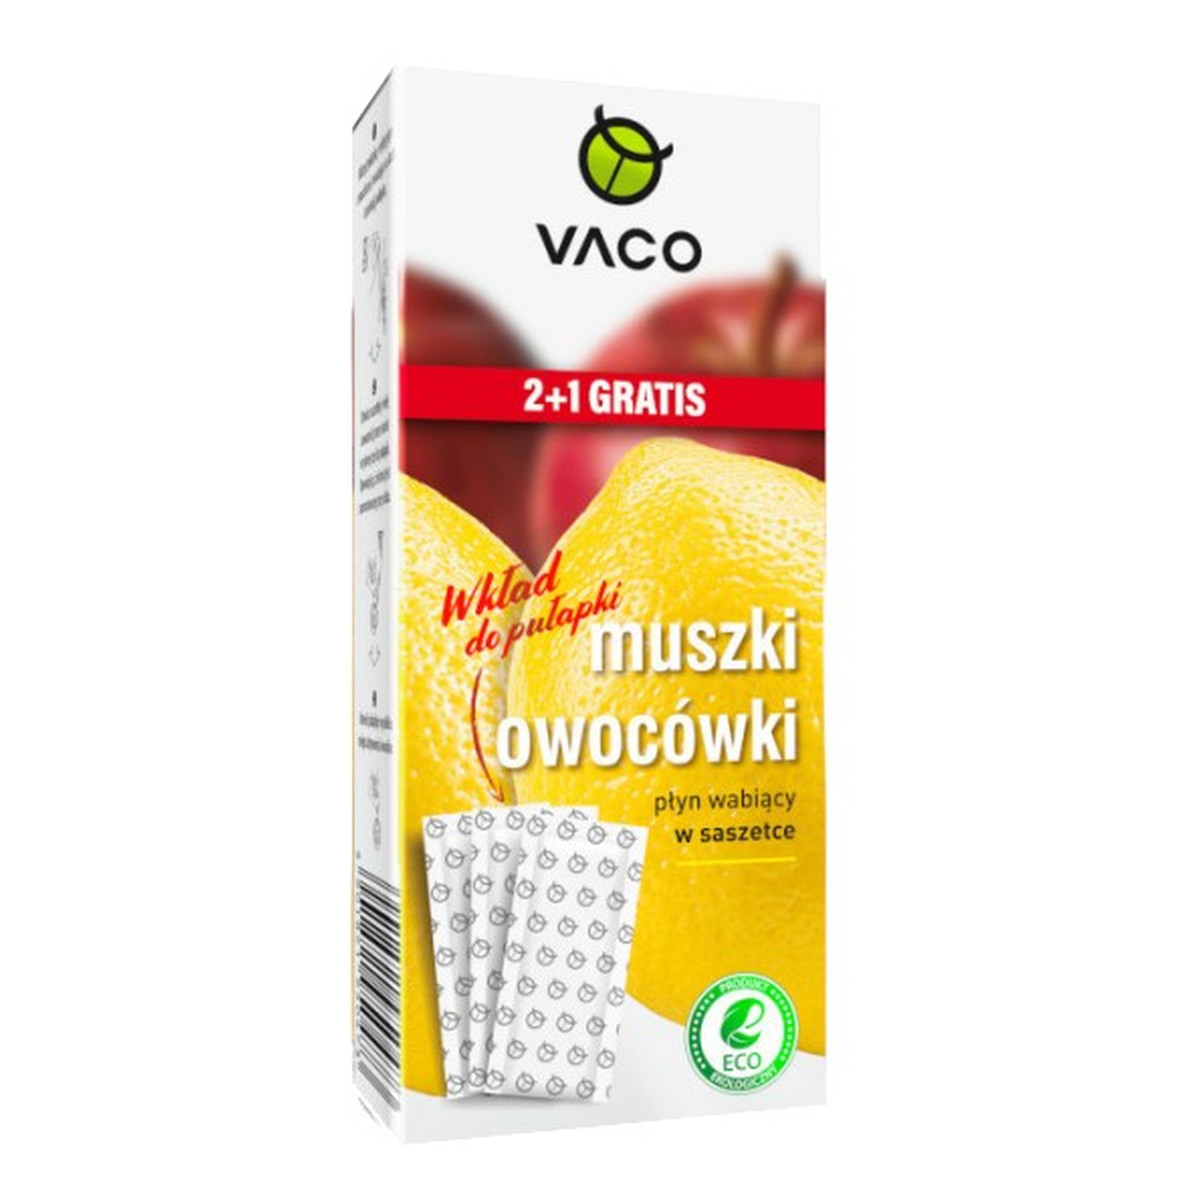 Vaco Eco wkład do pułapki na muszki owocówki-płyn wabiący w saszetce 1op.-3szt